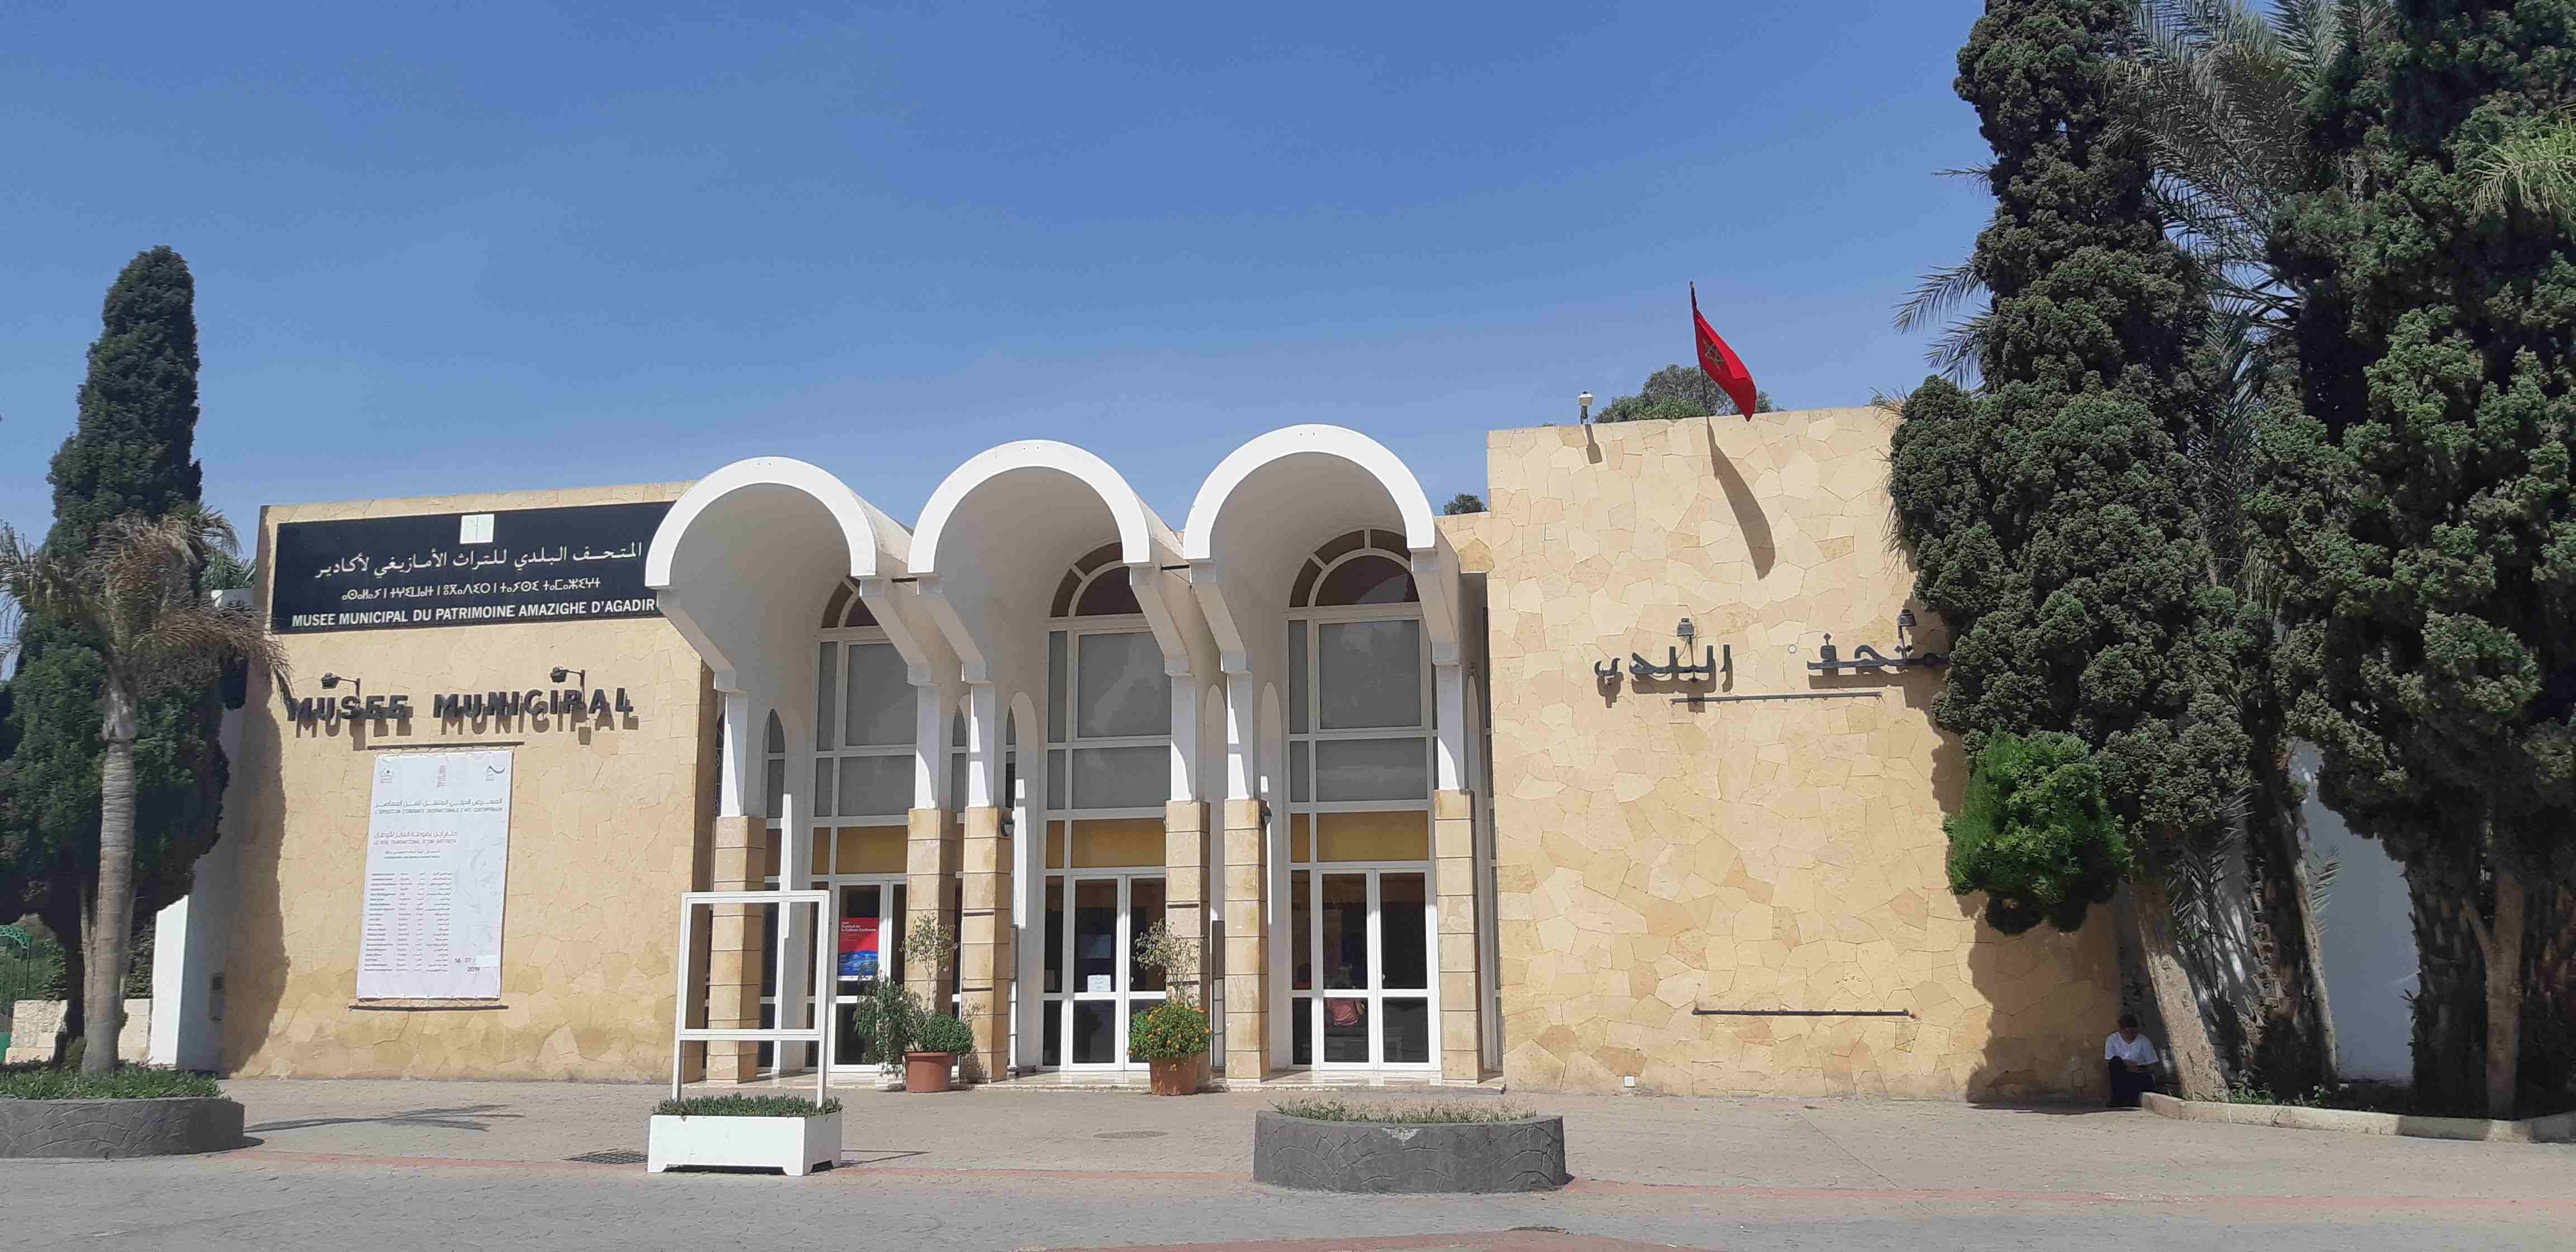 Amazigh Heritage Museum